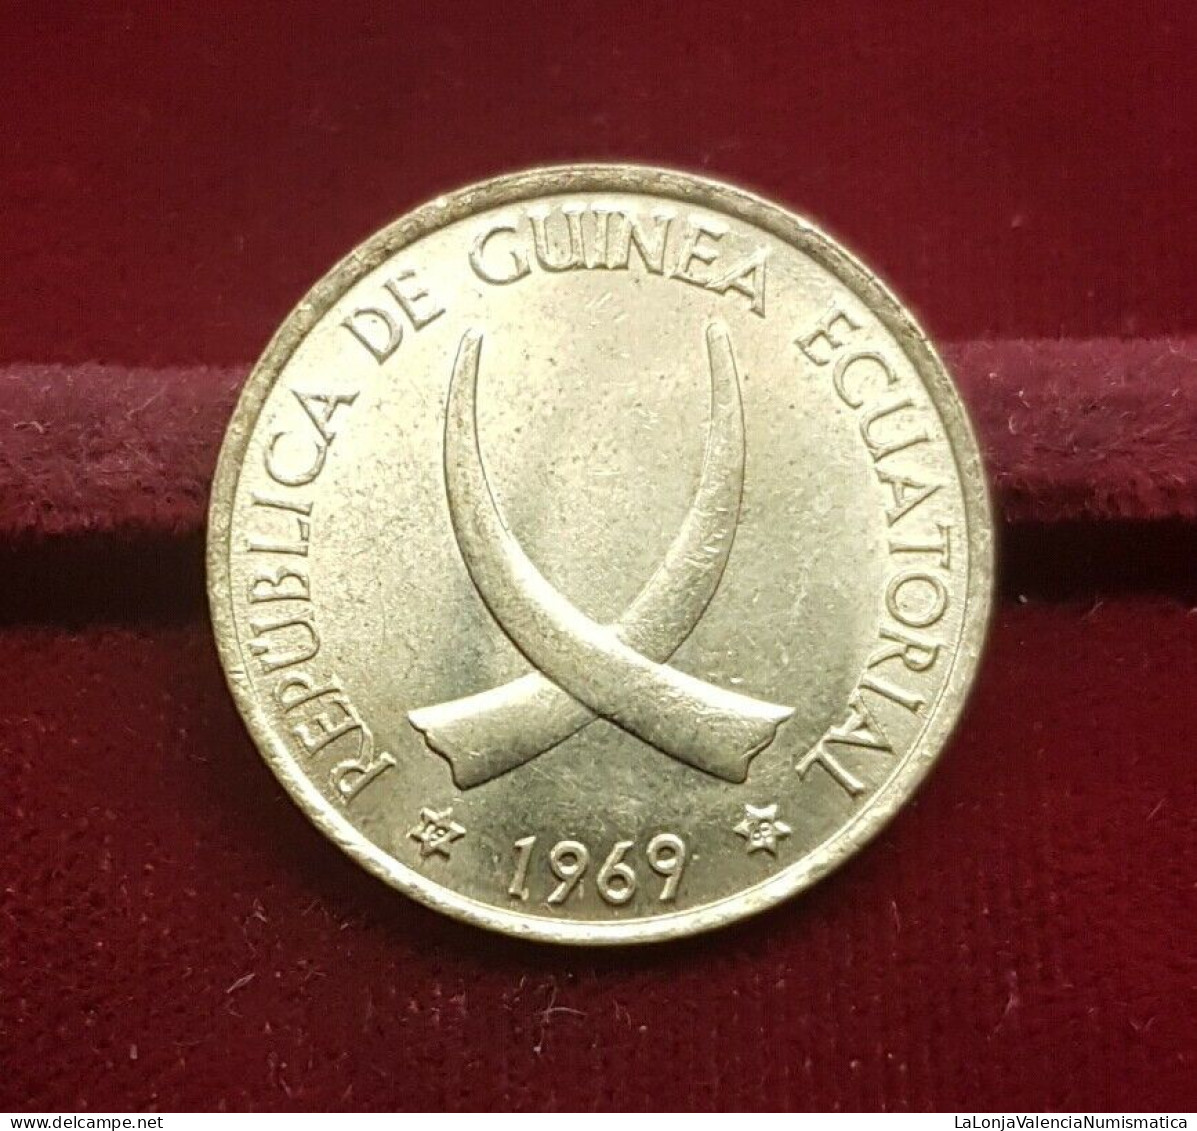 Guinea Ecuatorial Equatorial 1 Peseta Guineana 1969 *69 Km 1 Sc Unc - Guinea Equatoriale